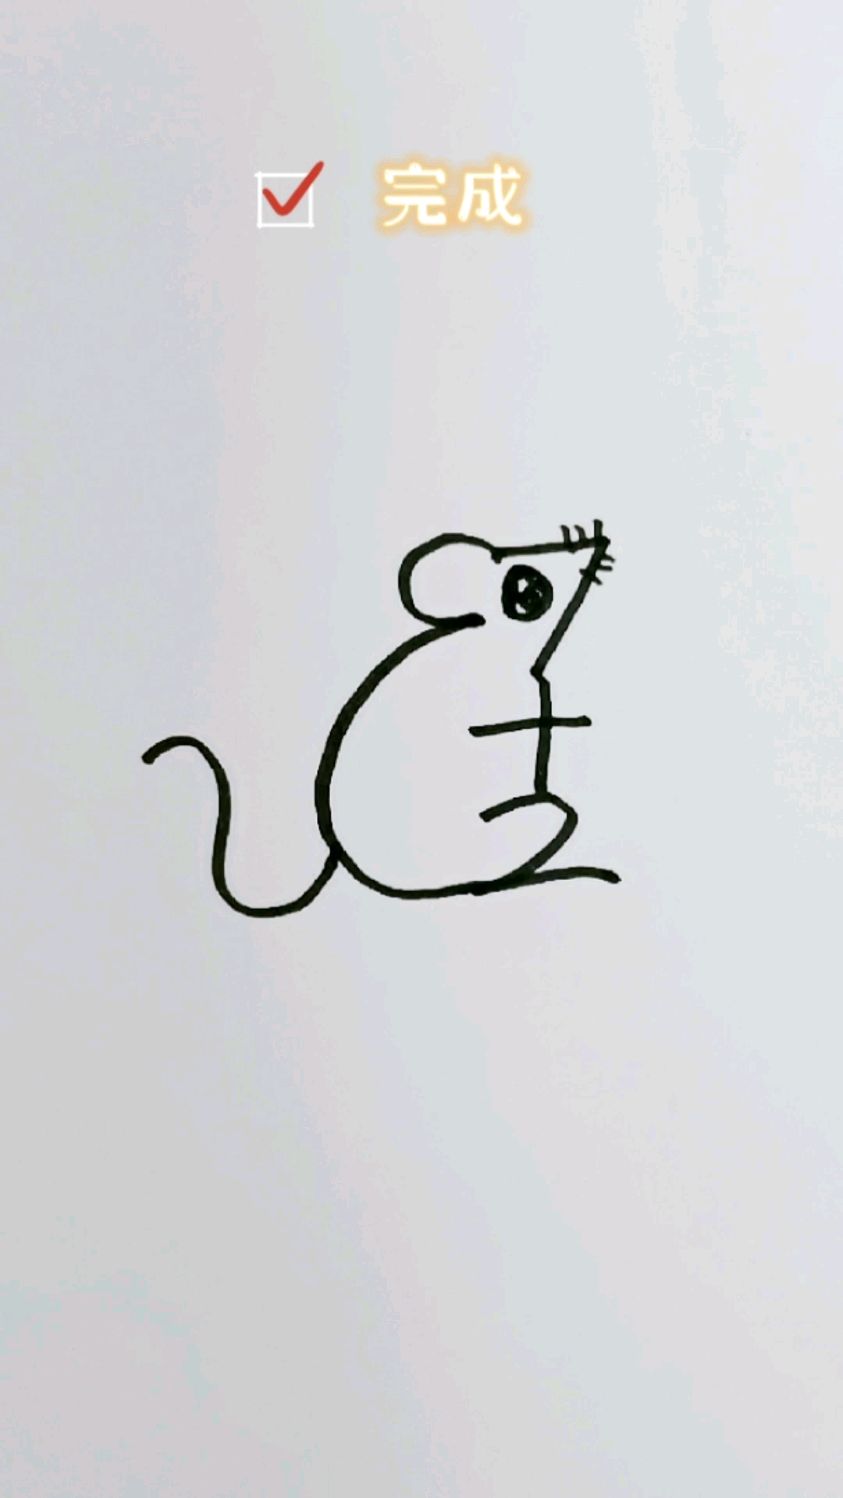 大个子老鼠简笔画图片